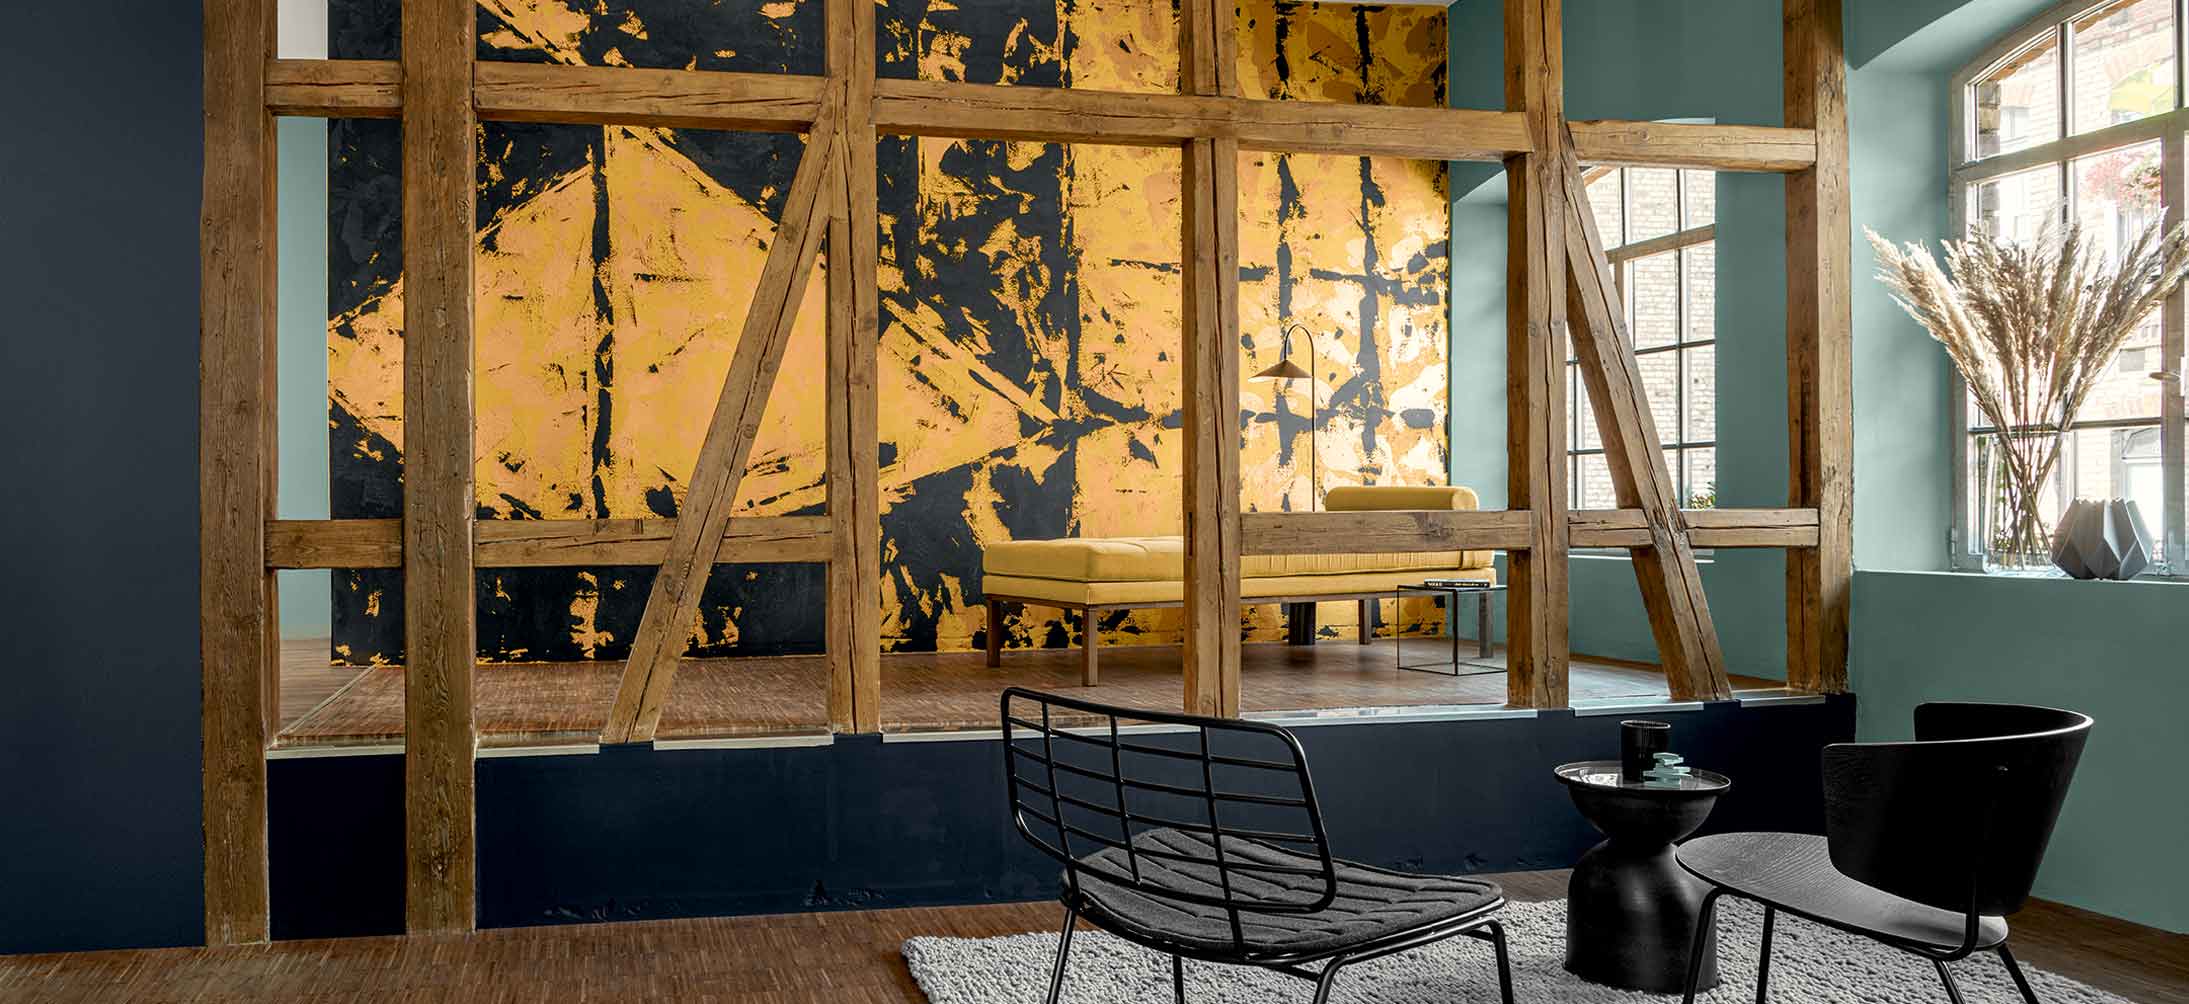 Rustikale Holzbalken im Vordergrund die ein Podest eomrajmem. dahiner eine große in farbigem Design gestrichene Wand in goldgelb/schwarz gehalten